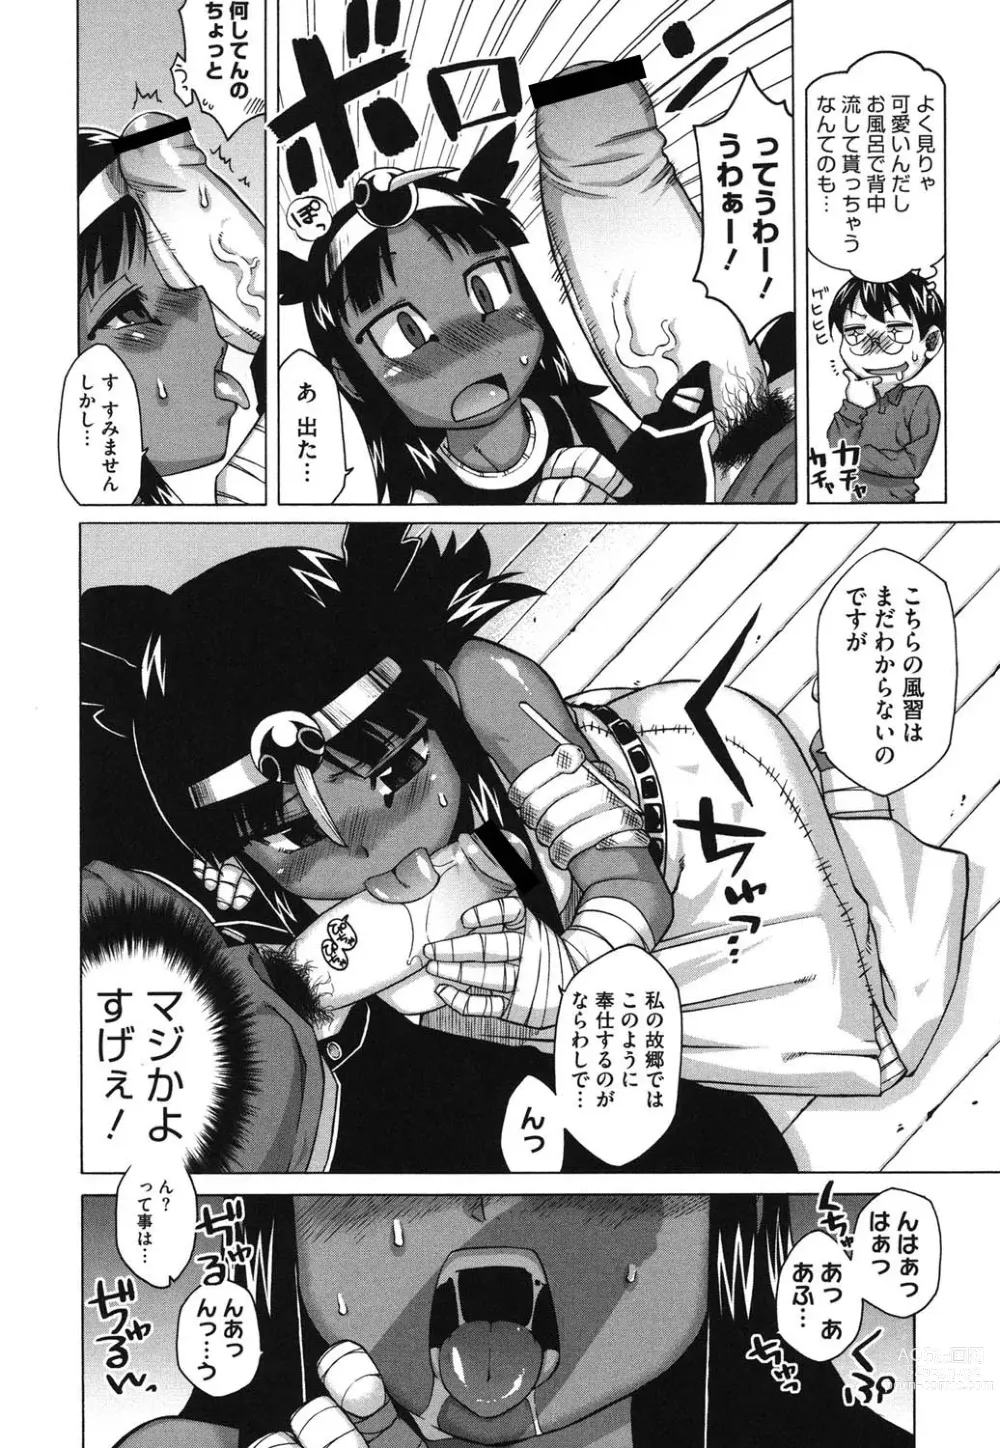 Page 9 of manga Sore wa Rekishi ni Kakanaide!